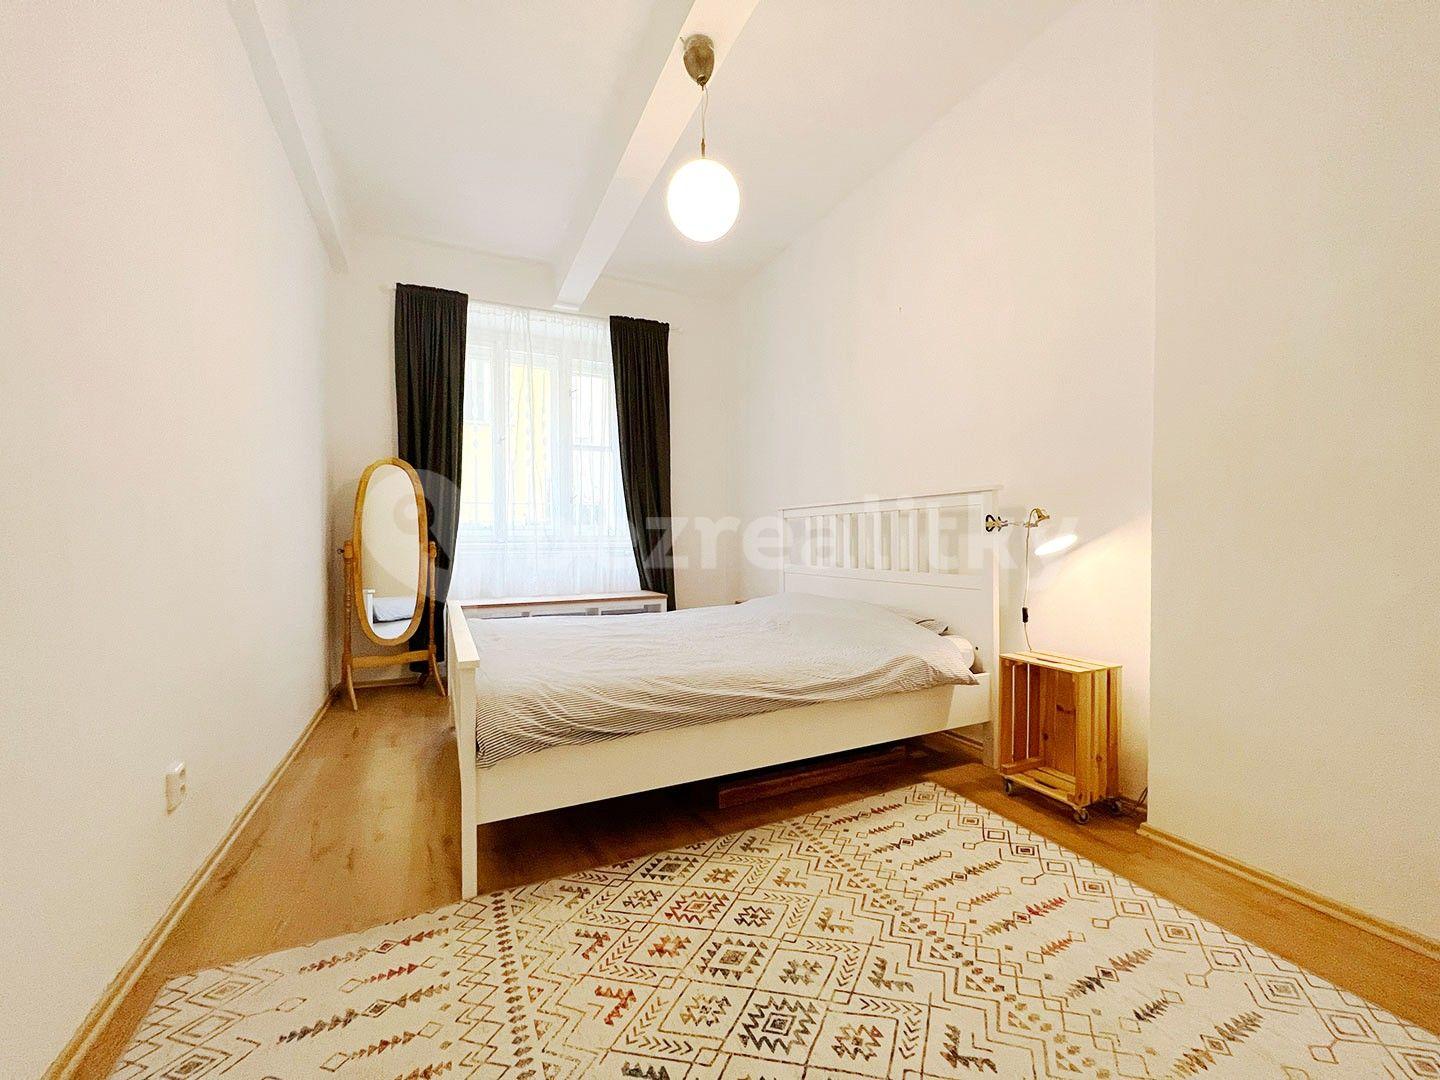 2 bedroom flat for sale, 56 m², Holandská, Prague, Prague